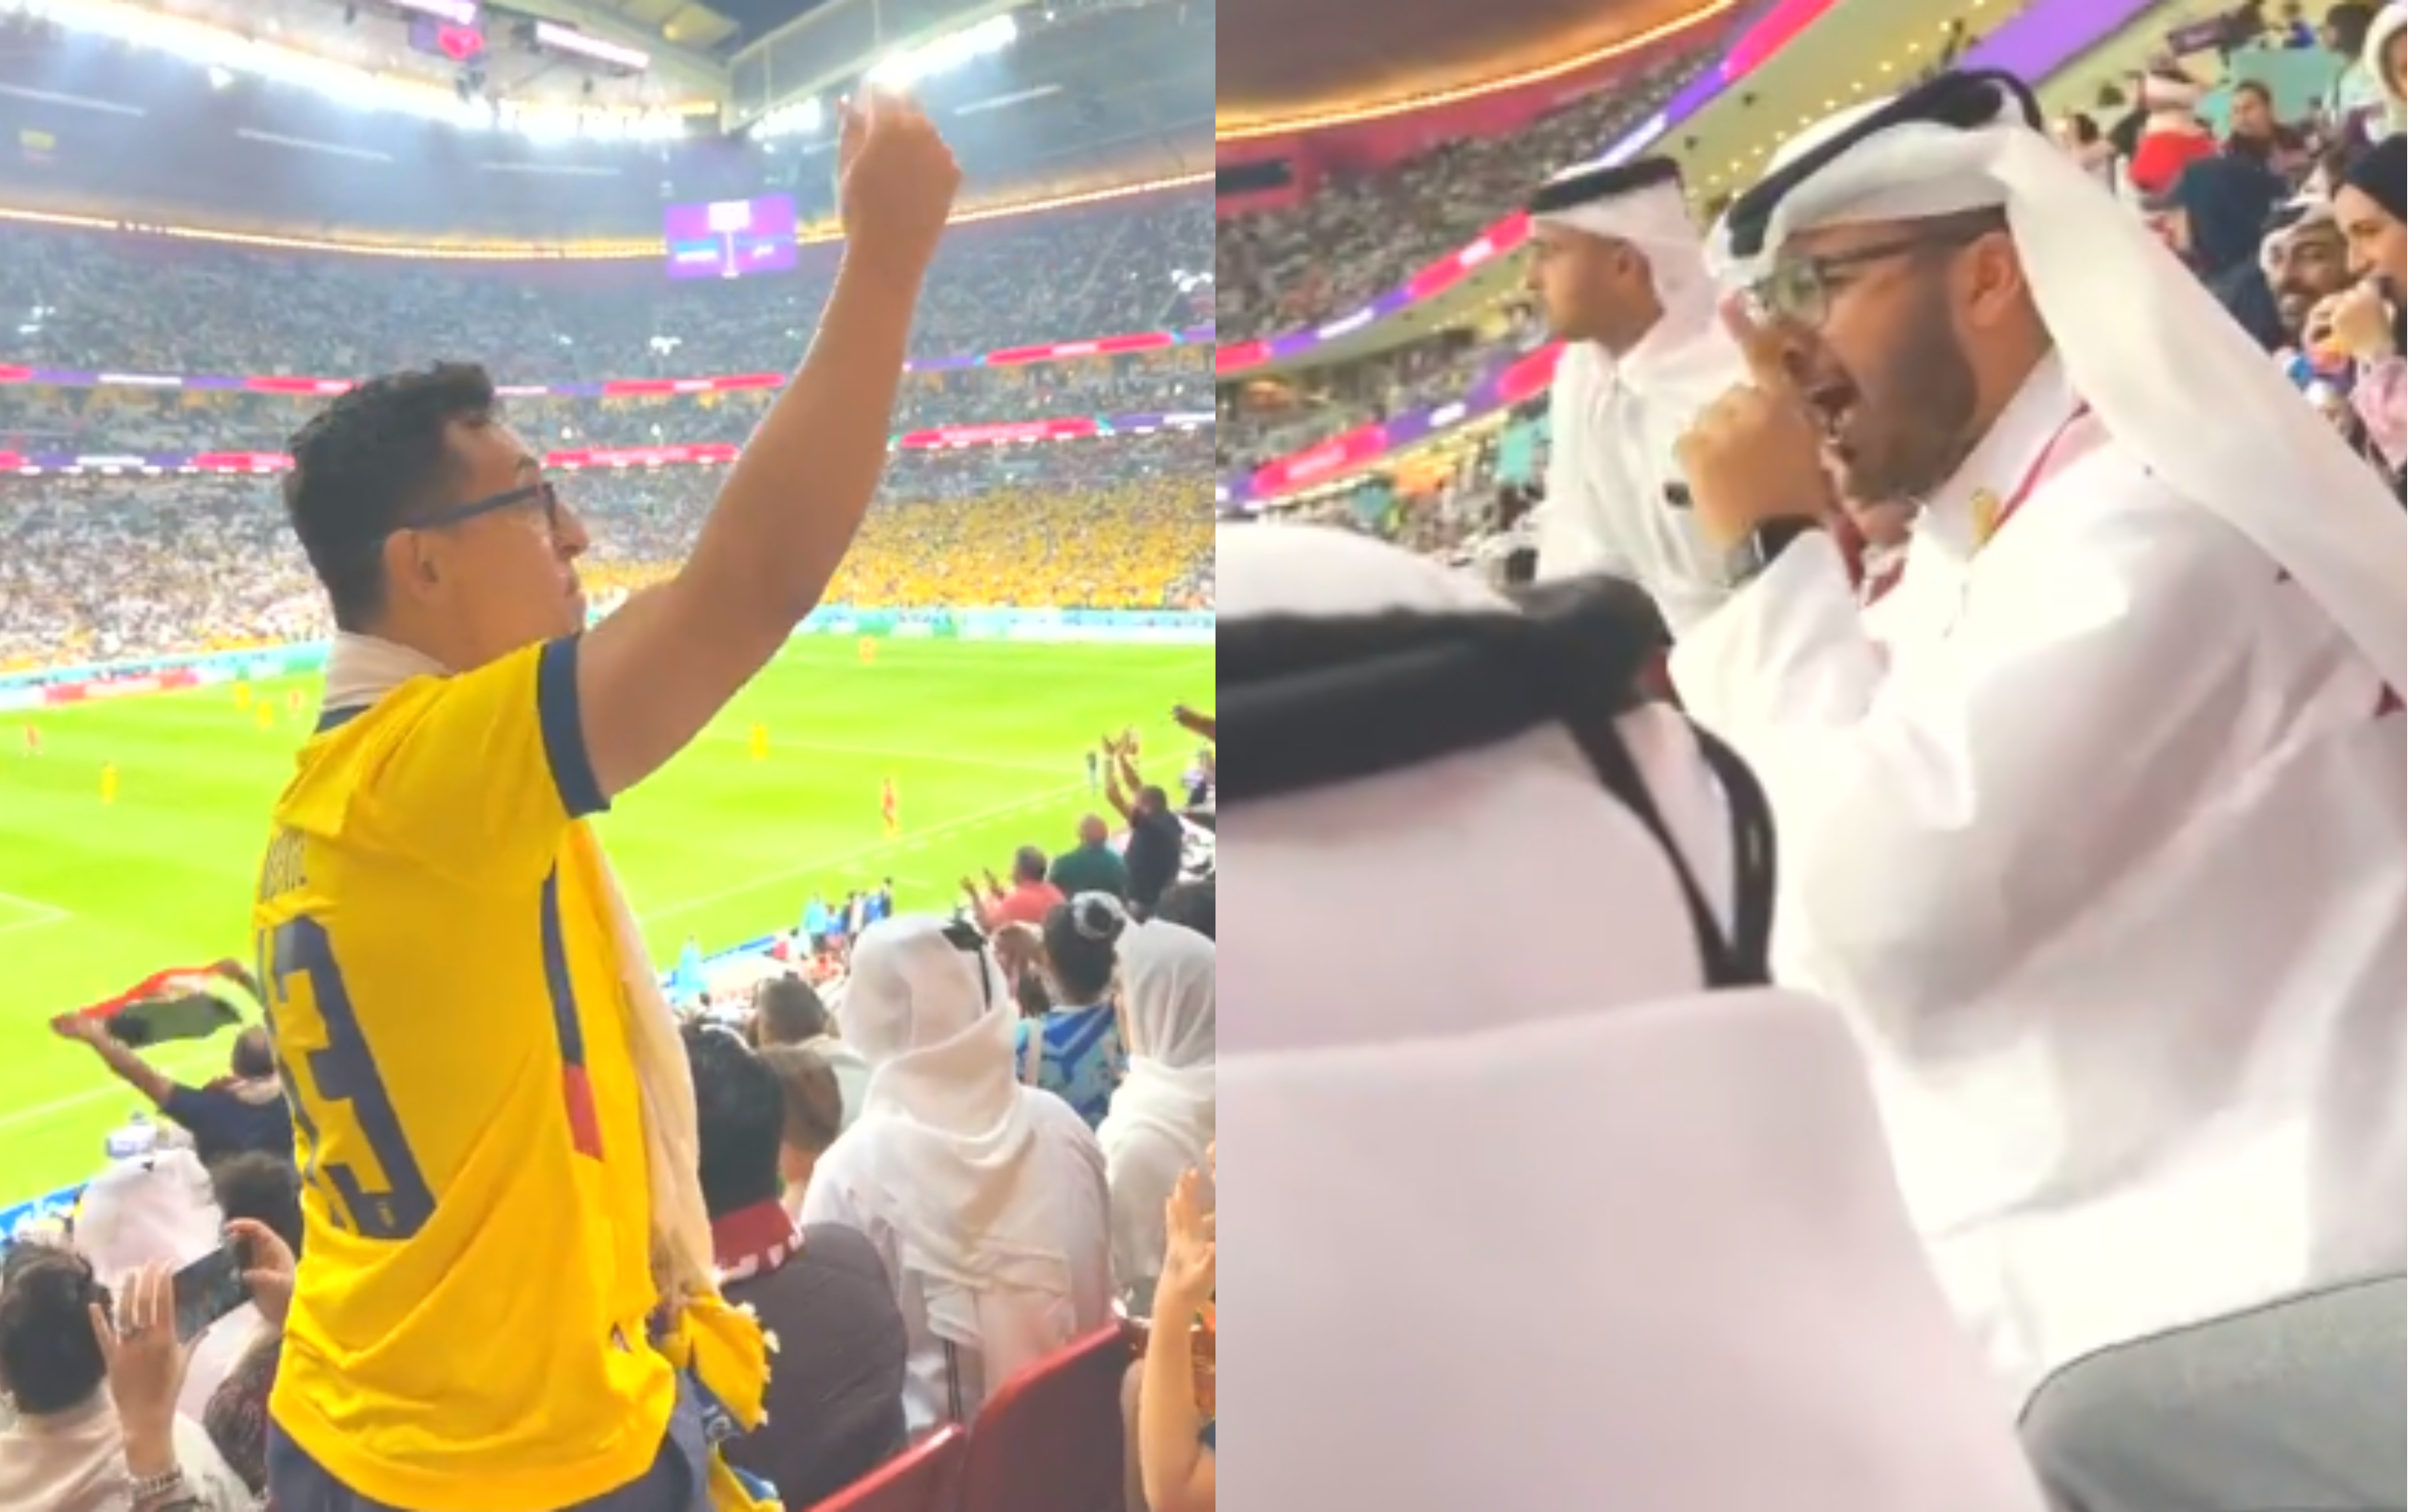 S-a ridicat în mijlocul suporterilor qatarezi: 10 milioane de vizualizări! ”Taci din gură și așează-te!” Cum s-a terminat totul